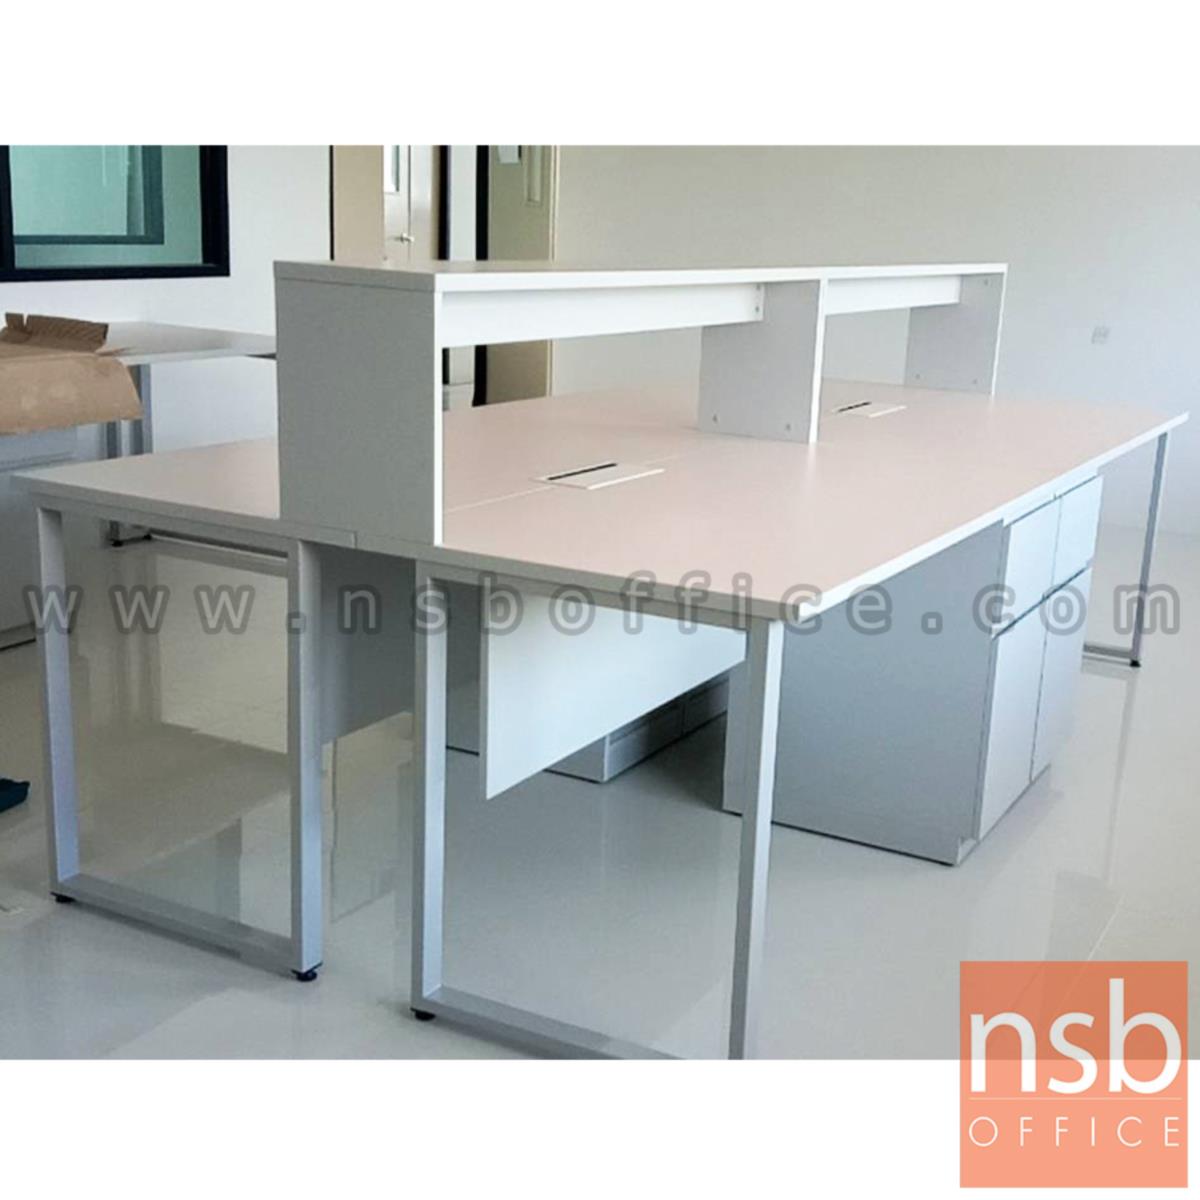 โต๊ะห้องแล็บ ท็อปลามิเนต HPL แบบมีชั้นต่อบน  พร้อมป๊อปอัพ กึ่งกลางโต๊ะ รุ่น A24A047-1 